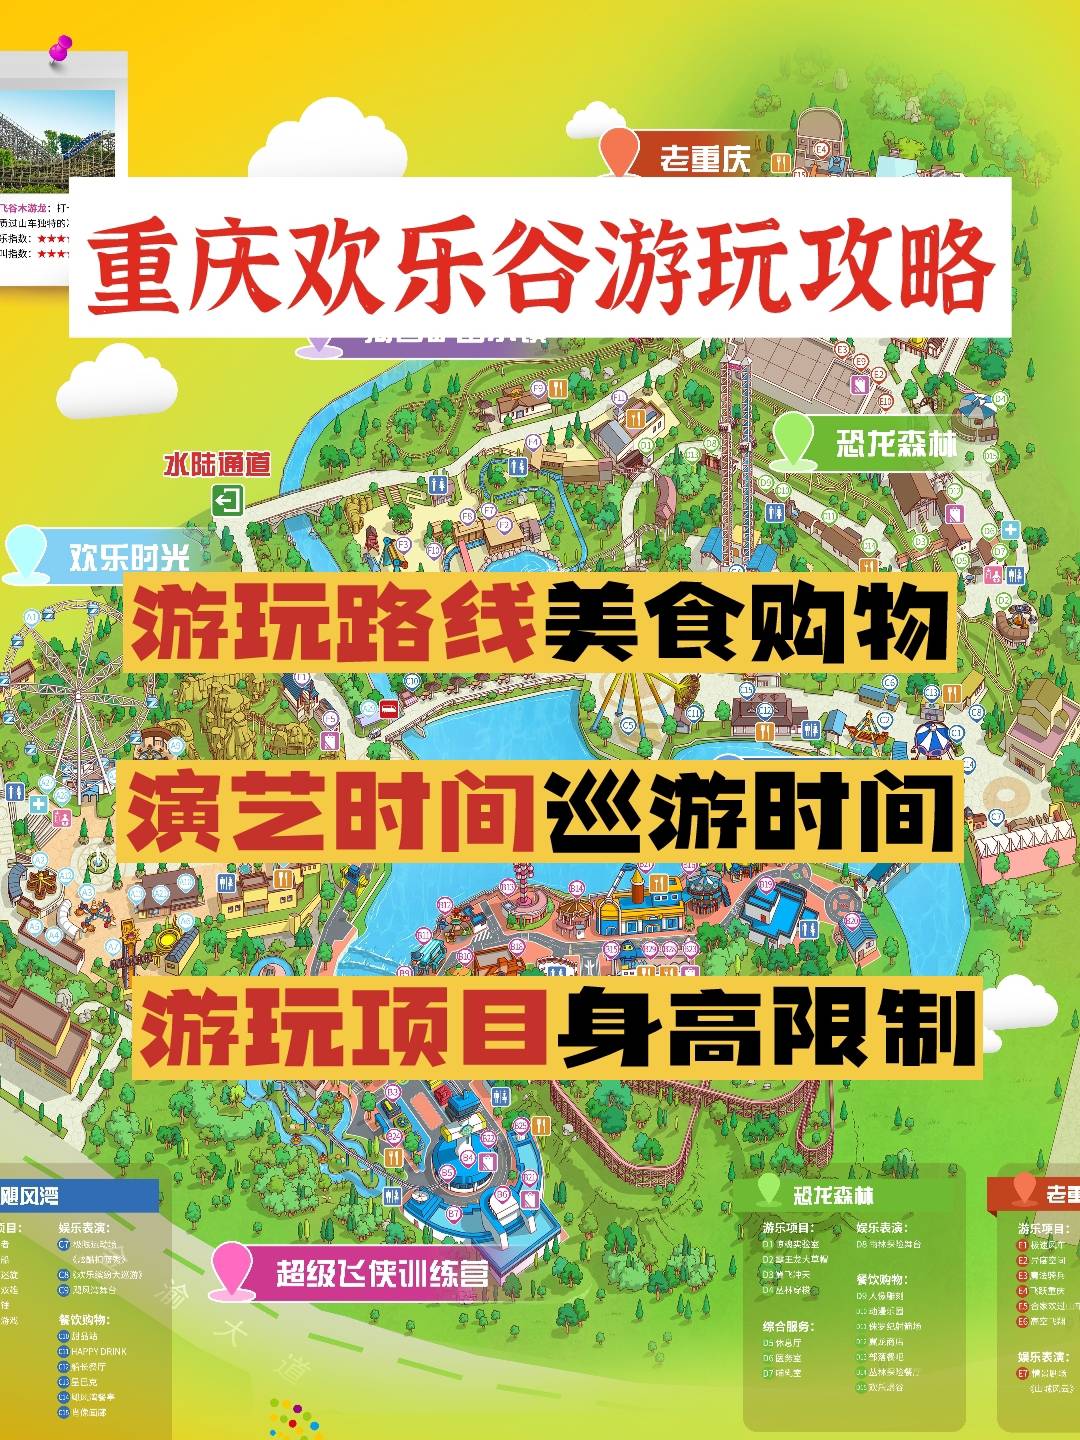 重庆欢乐谷地图攻略图片